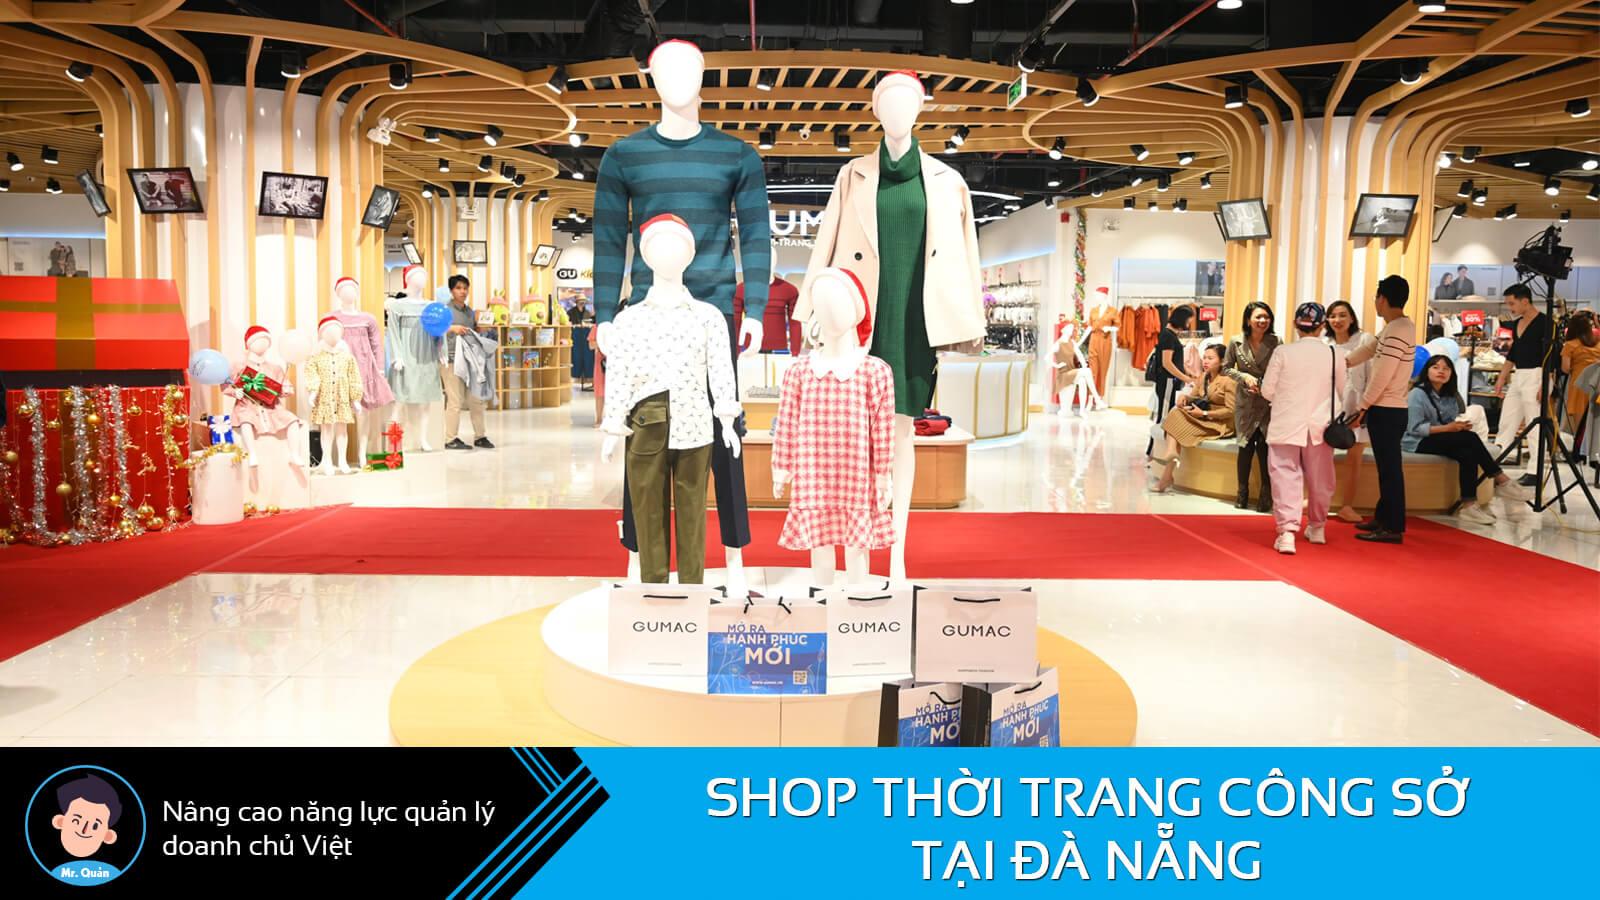 Shop thời trang công sở Đà Nẵng Gumac